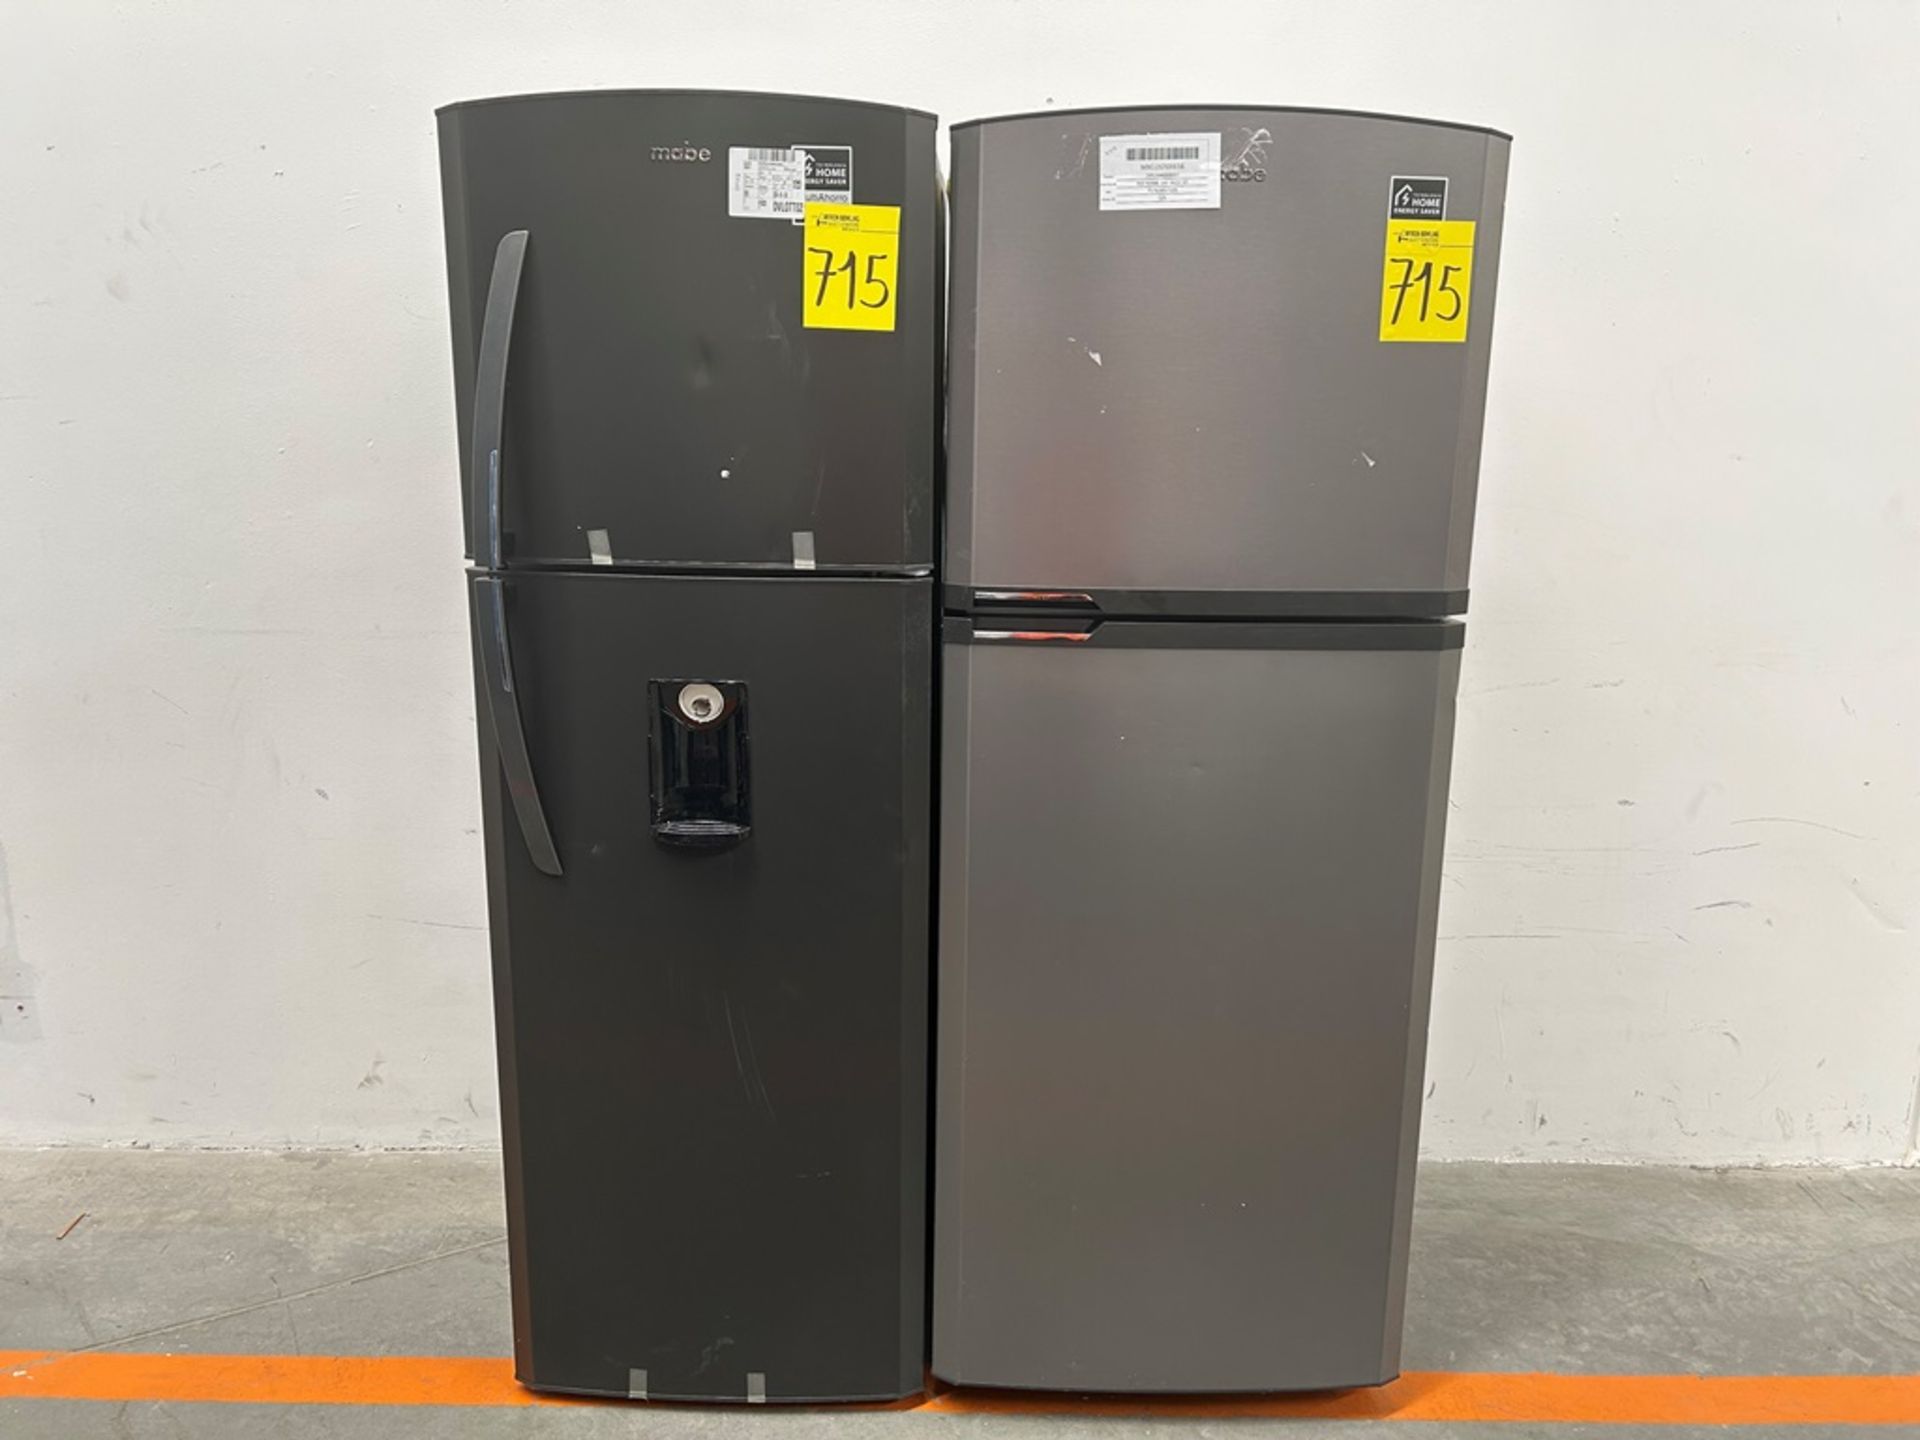 Lote de 2 refrigeradores contiene: 1 refrigerador Marca MABE, Modelo RME360FVMRMA, Serie 816455, Co